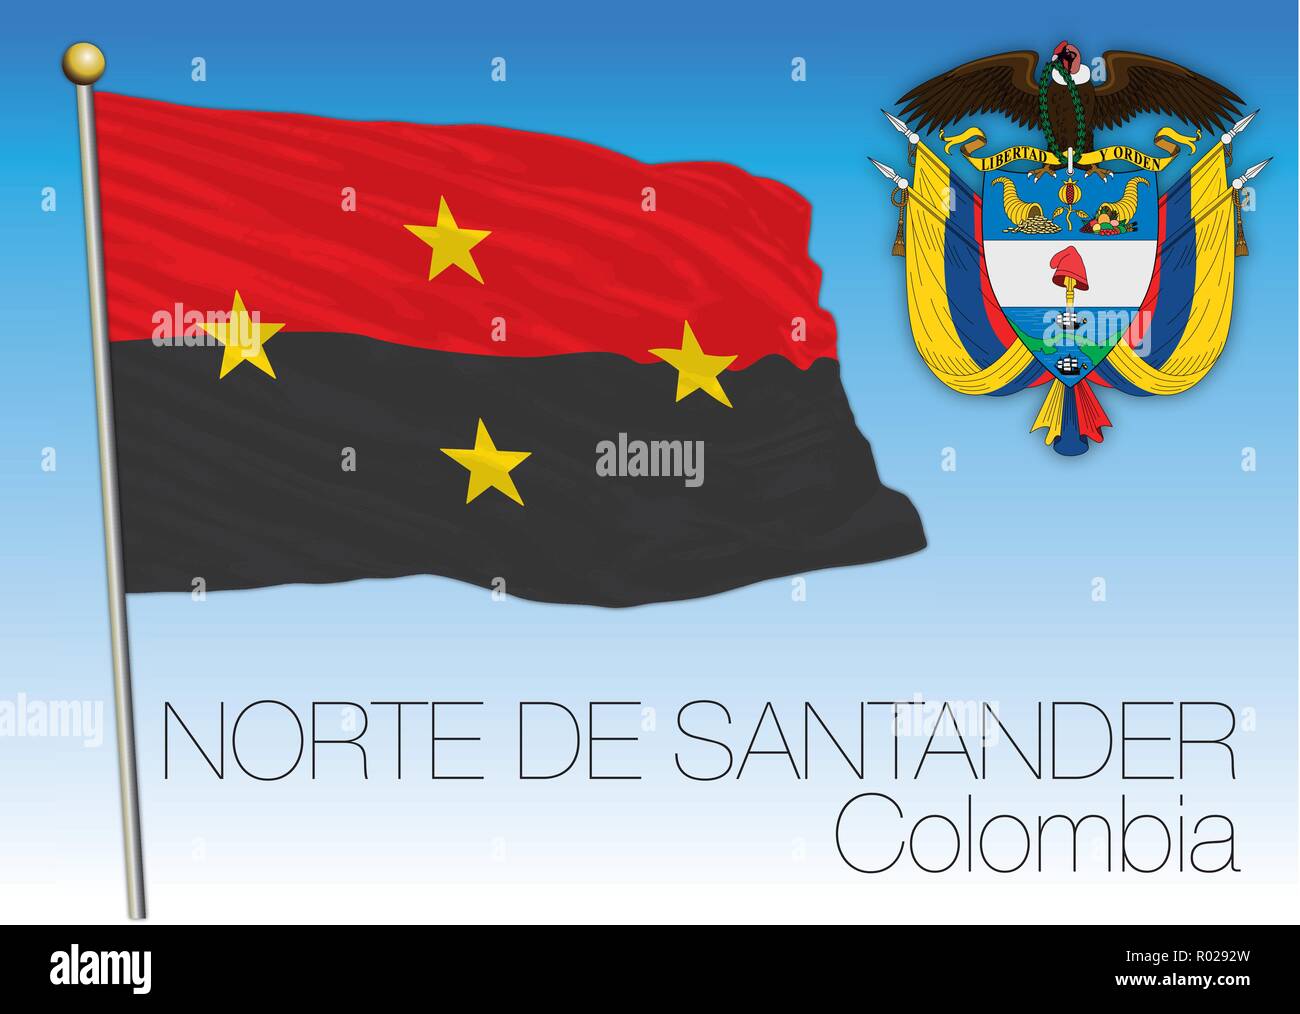 Nothe de Santander regional flag, Republica de Colombia, vector illustration Stock Vector